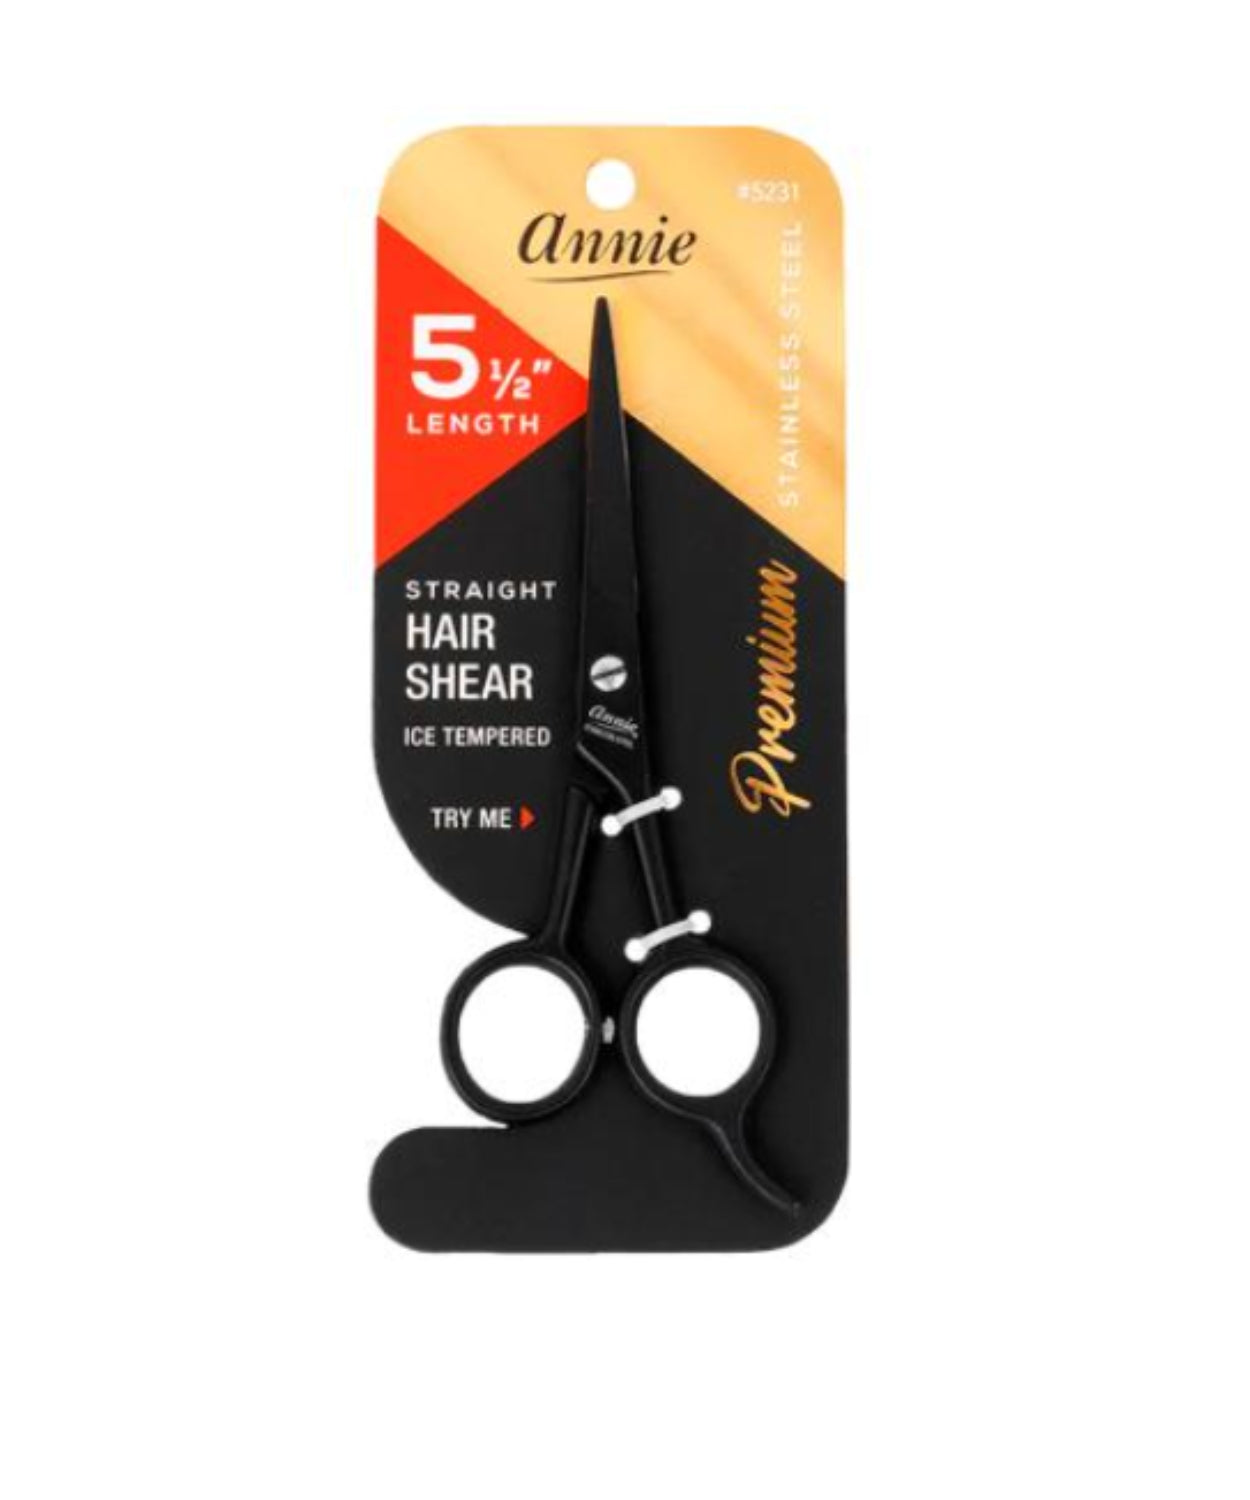 Annie Premium Stainless Steel Straight Hair Shear 5 1/2" #5024 (Silver) - BRAID BEAUTY